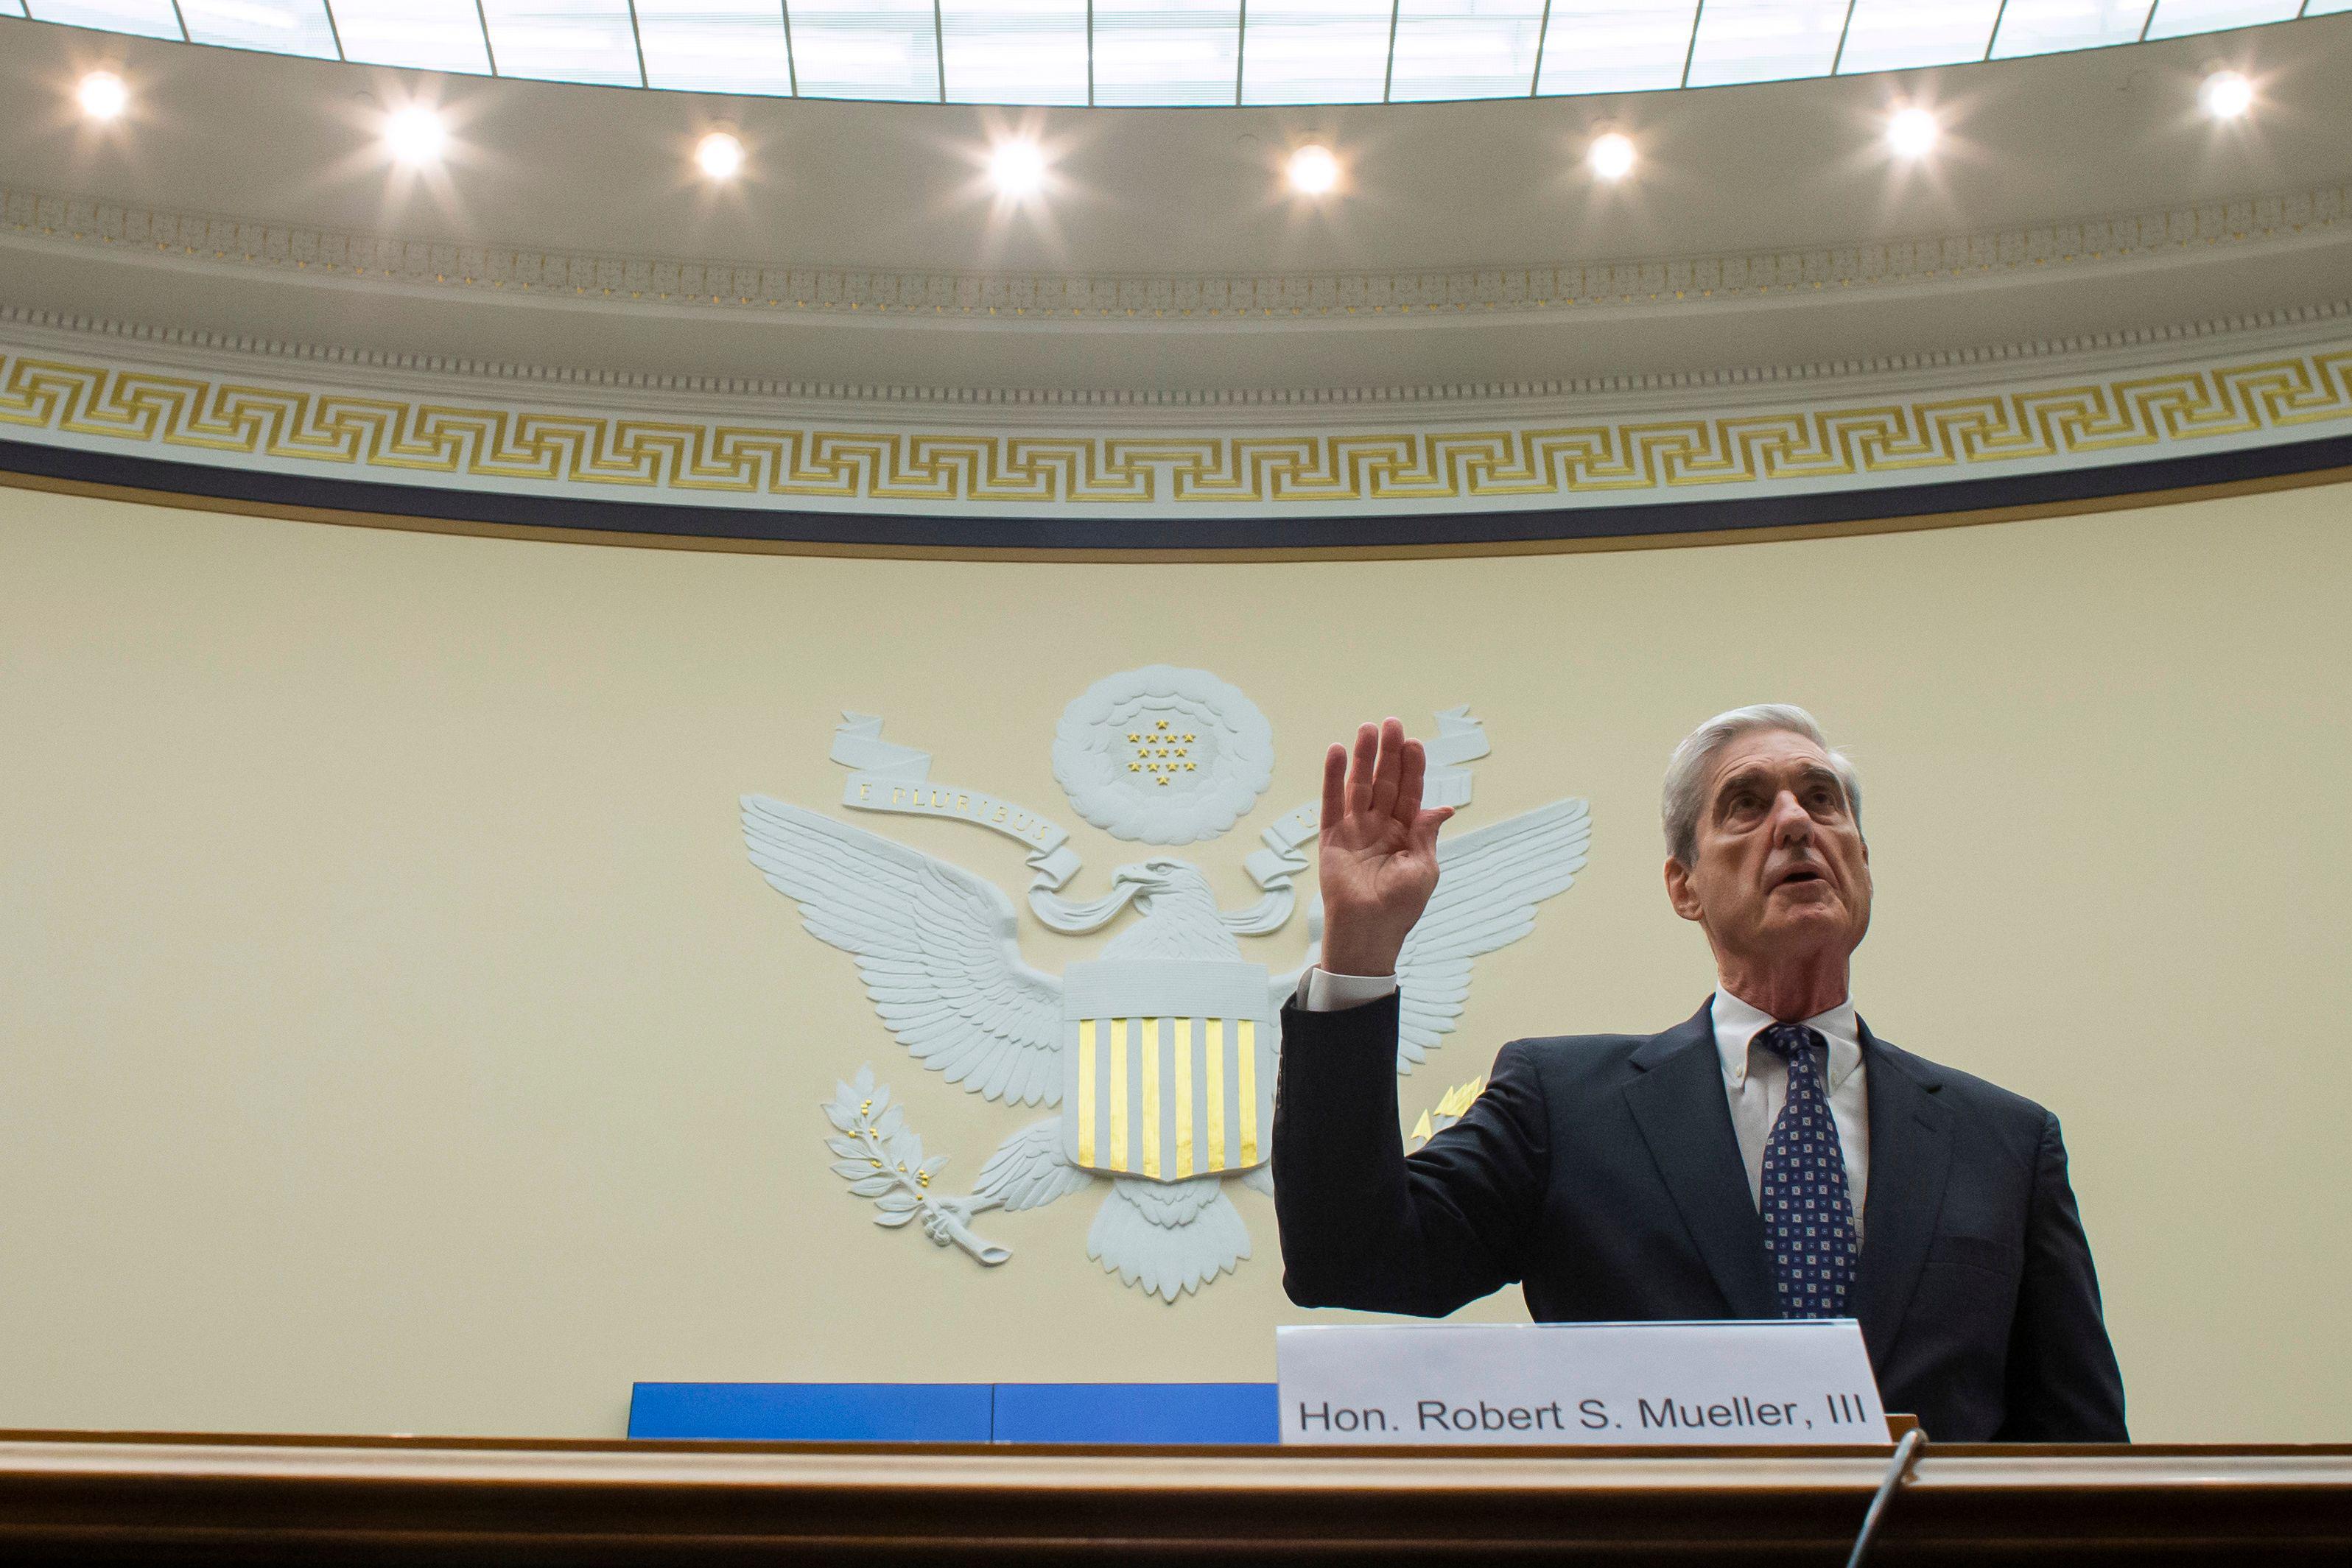 Robert Mueller stands, raising his right hand.